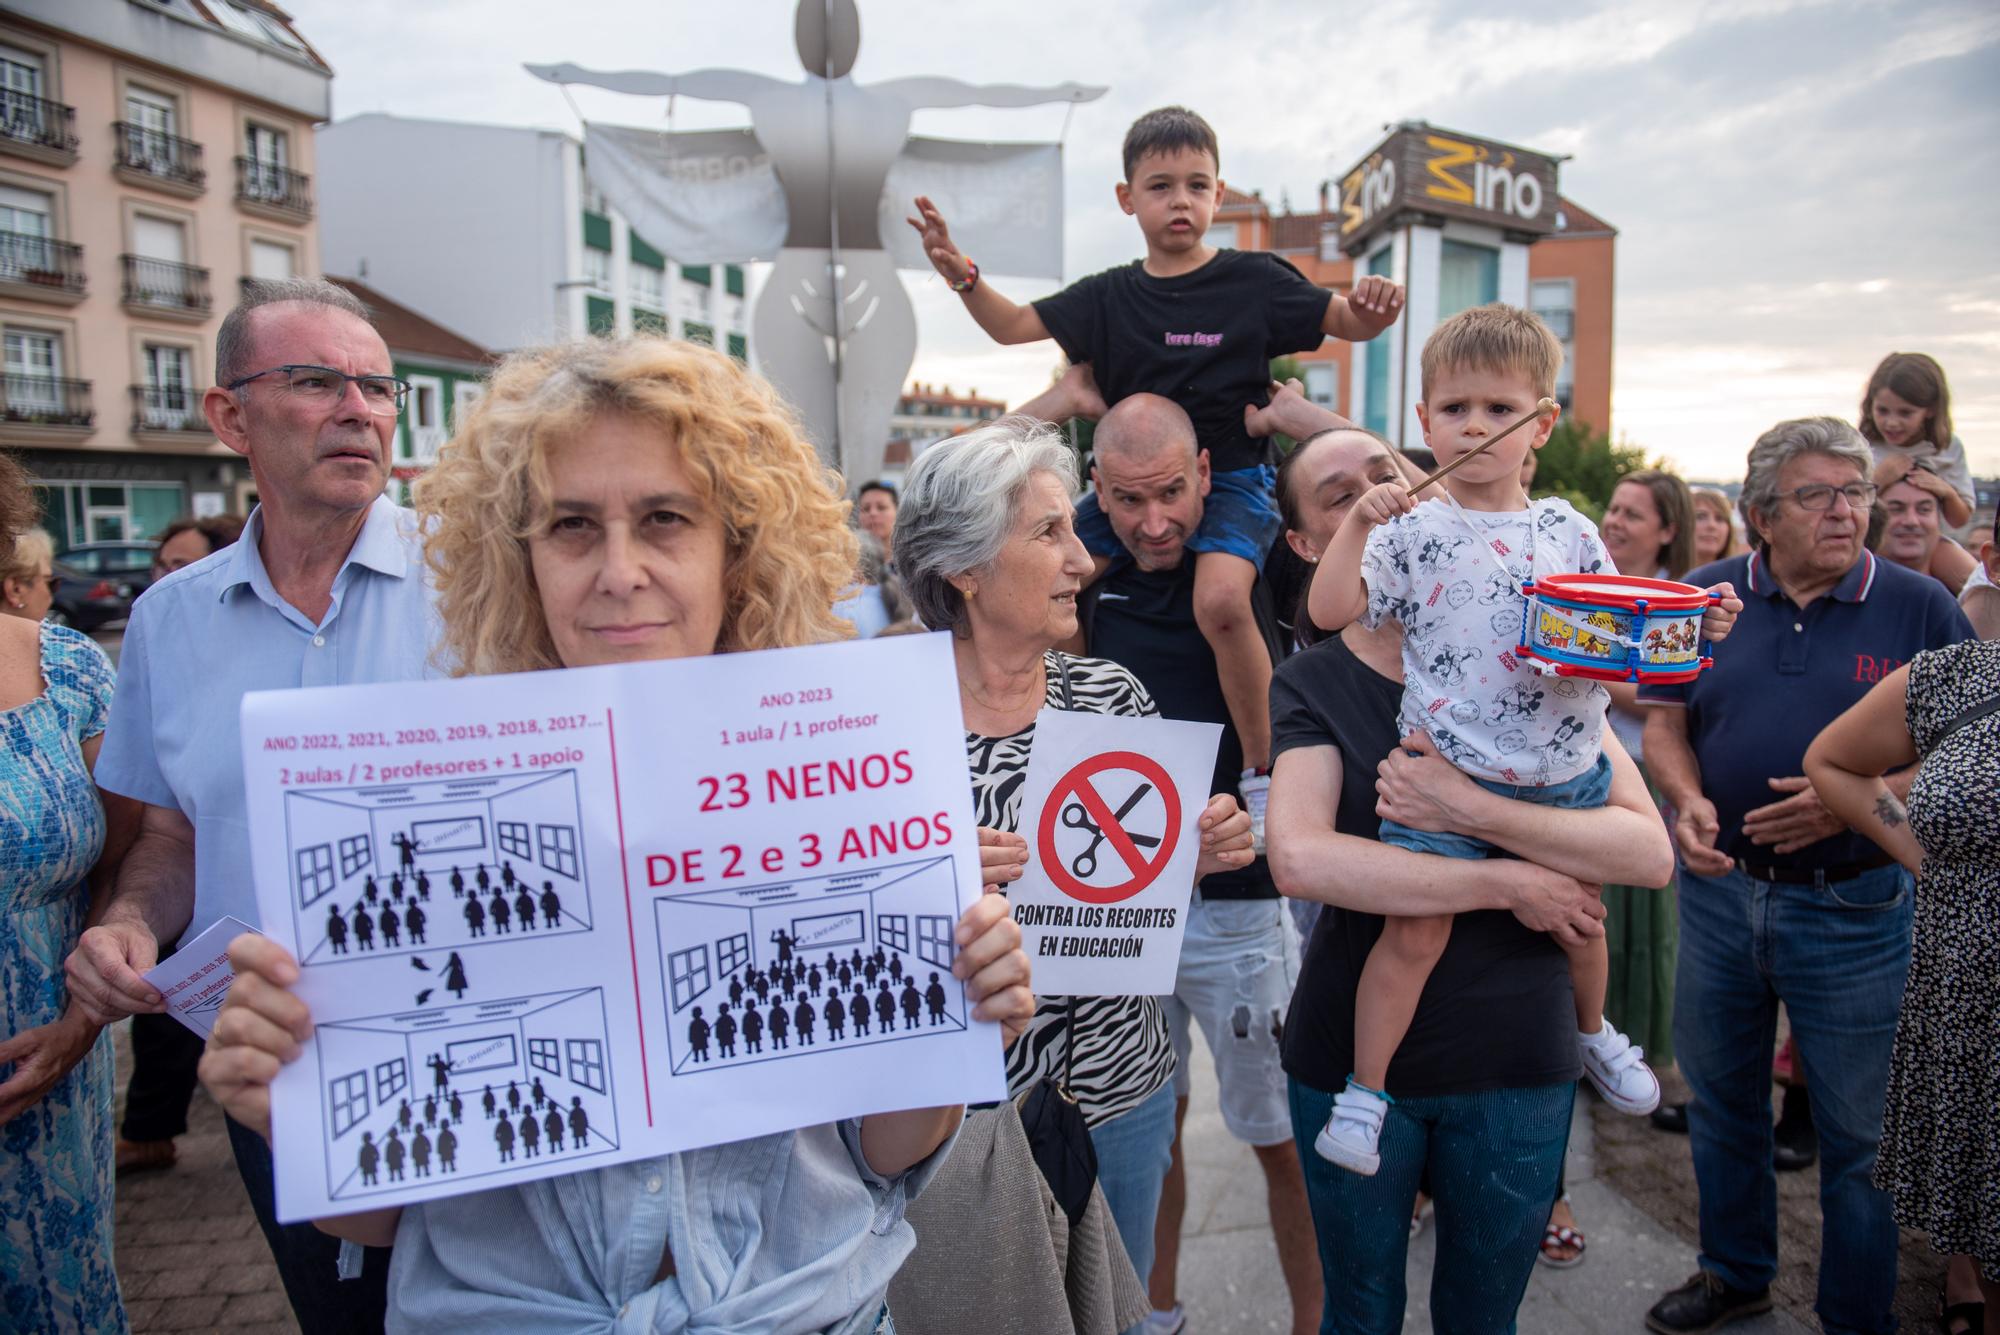 Protesta en Miño por la supresión de un aula de Infantil